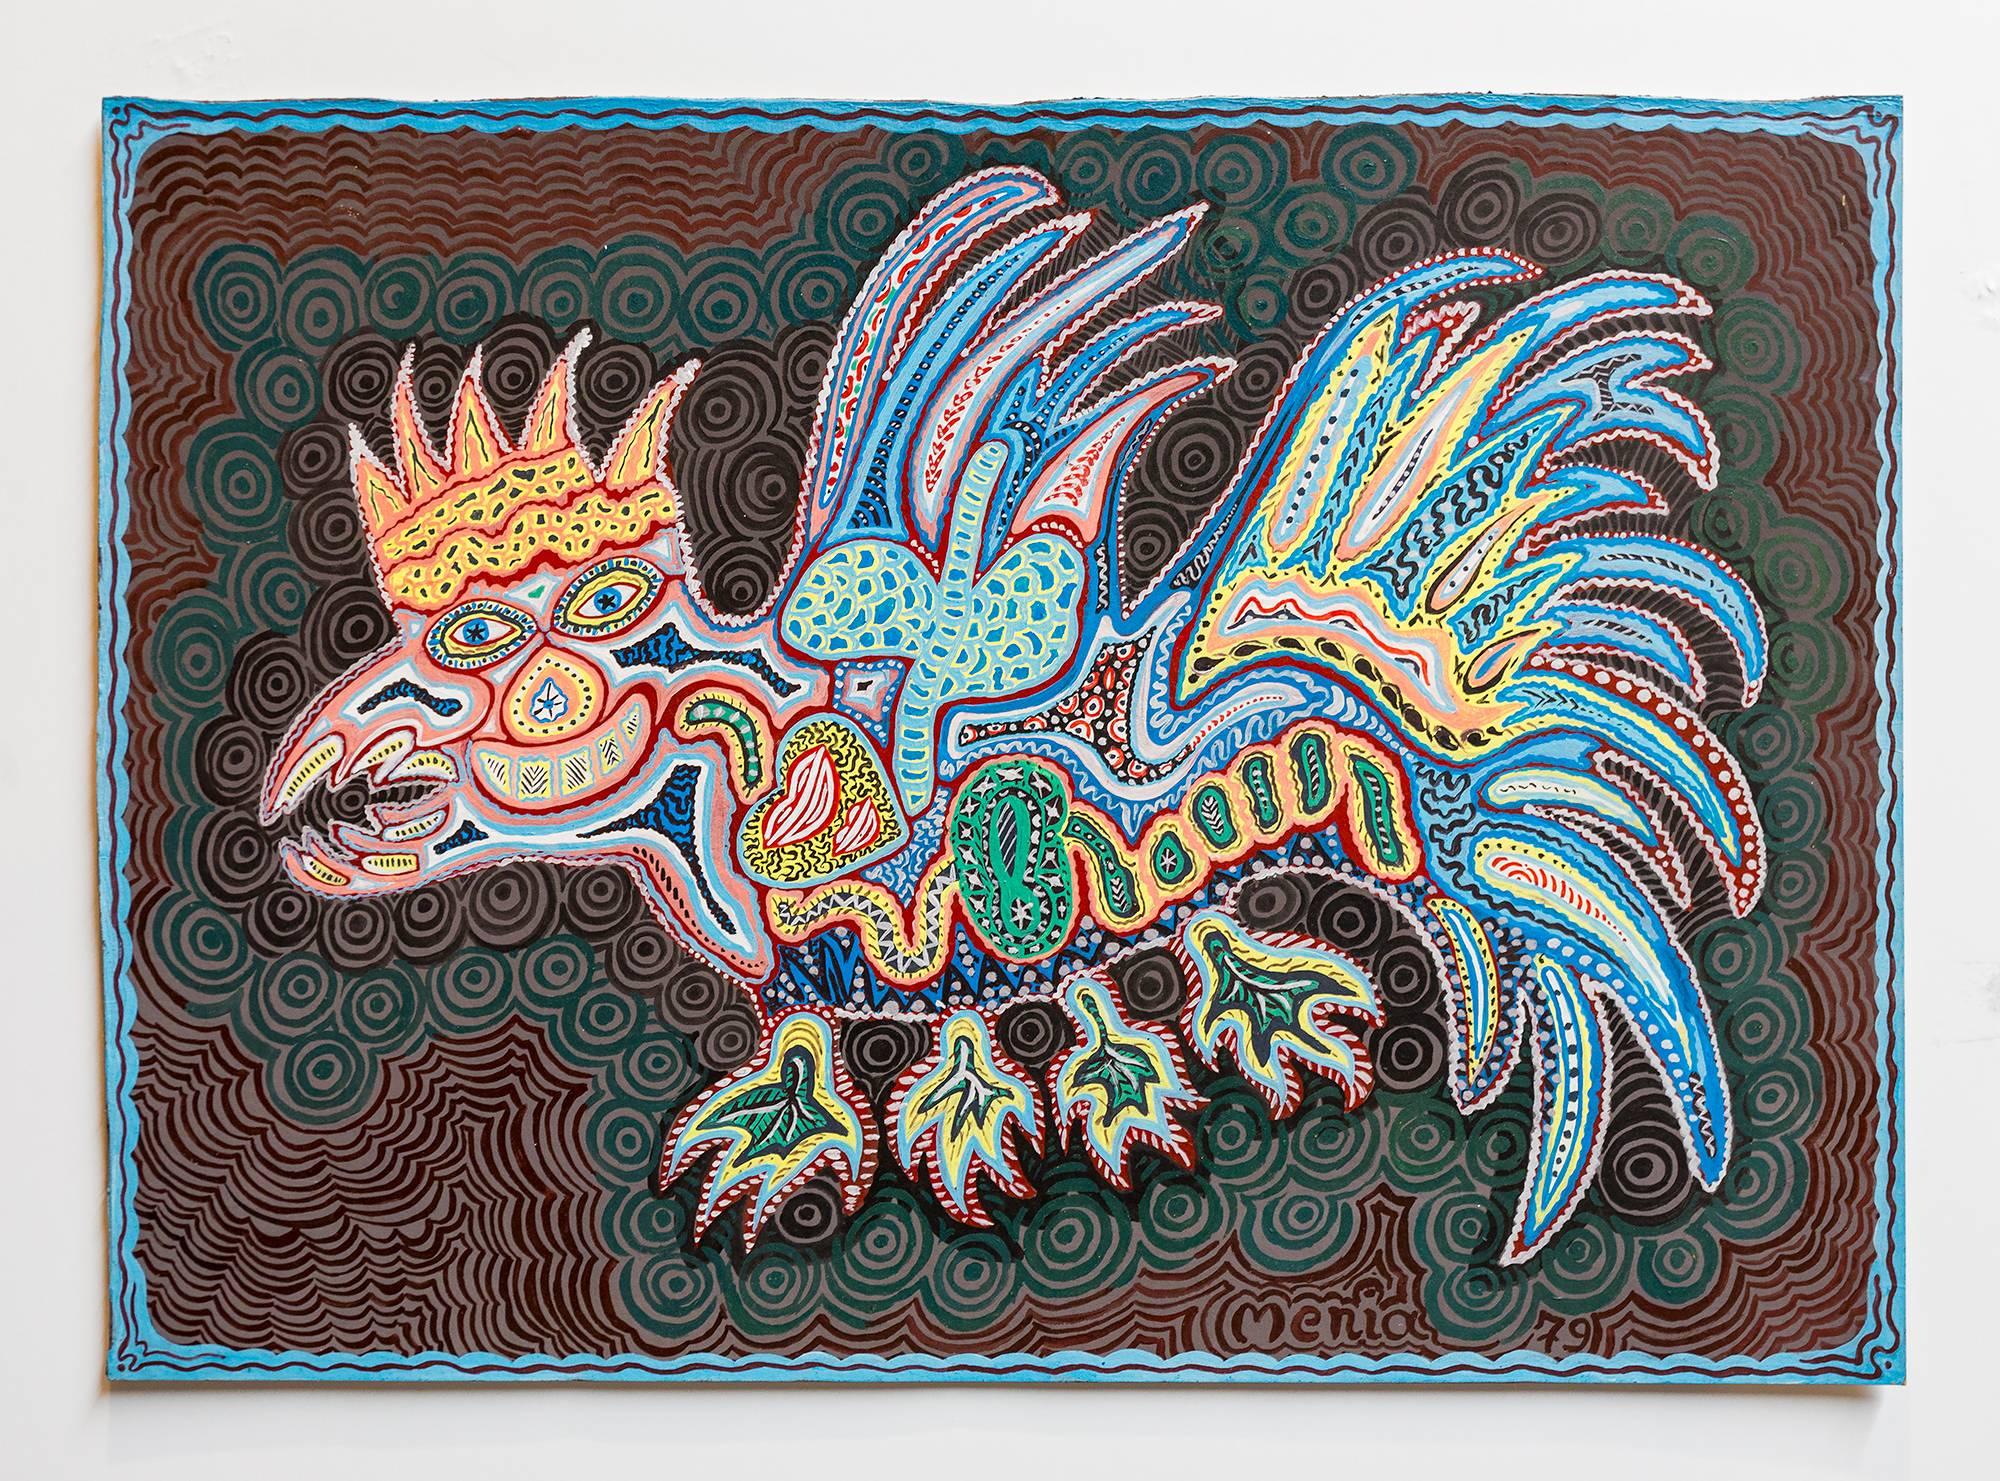 Figurative Painting Menia Litvak - Art populaire israélien - Peinture de dragon naïf aux couleurs vives